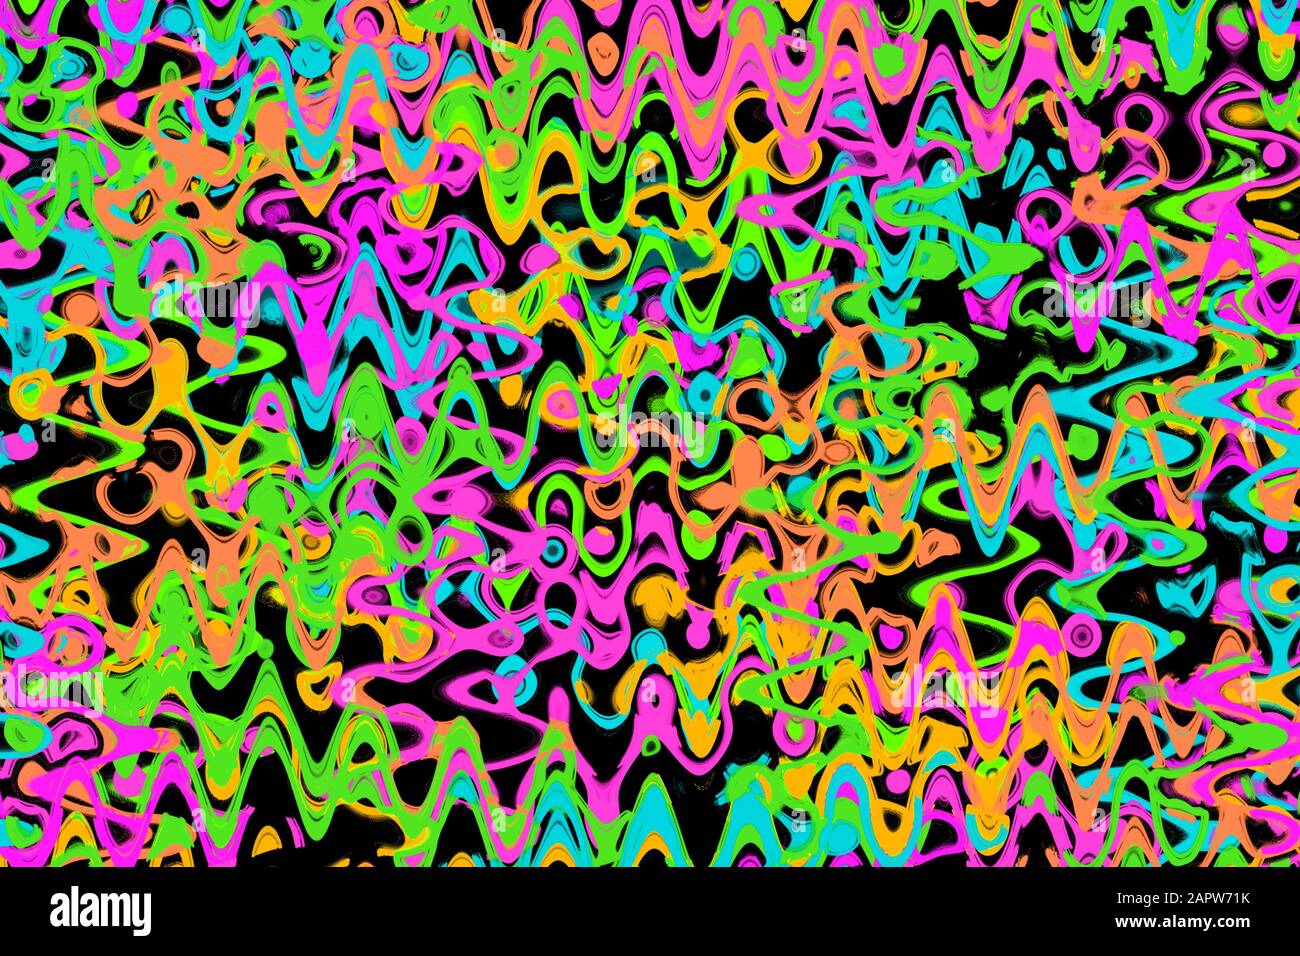 Eine abstrakte Wellenlinie Hintergrundbild. Stockfoto